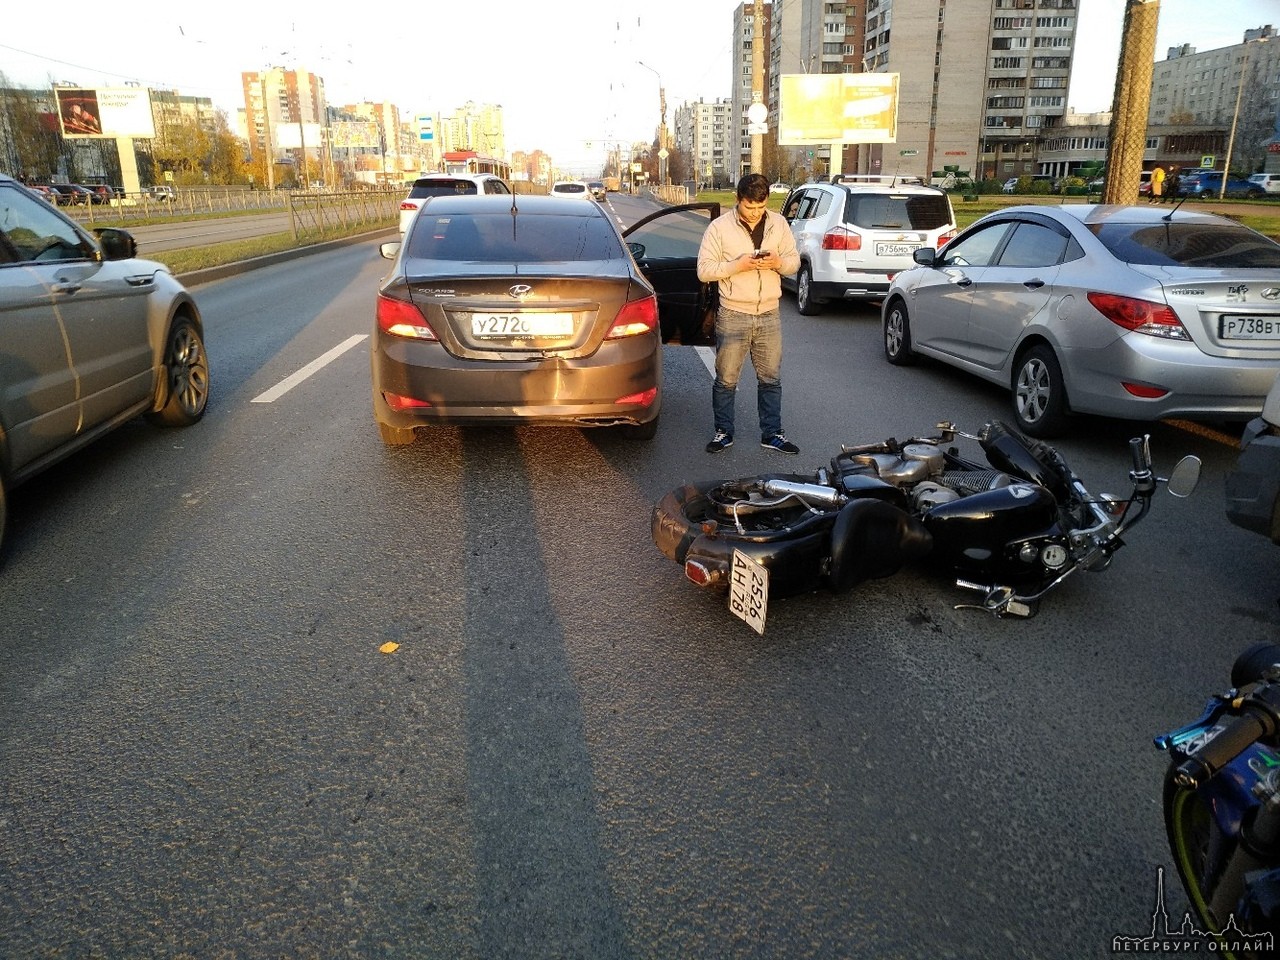 На Коллонтай водитель Яндекс такси подрезал мотоциклиста. Мотоциклист отделался ссадиной на ноге и л...